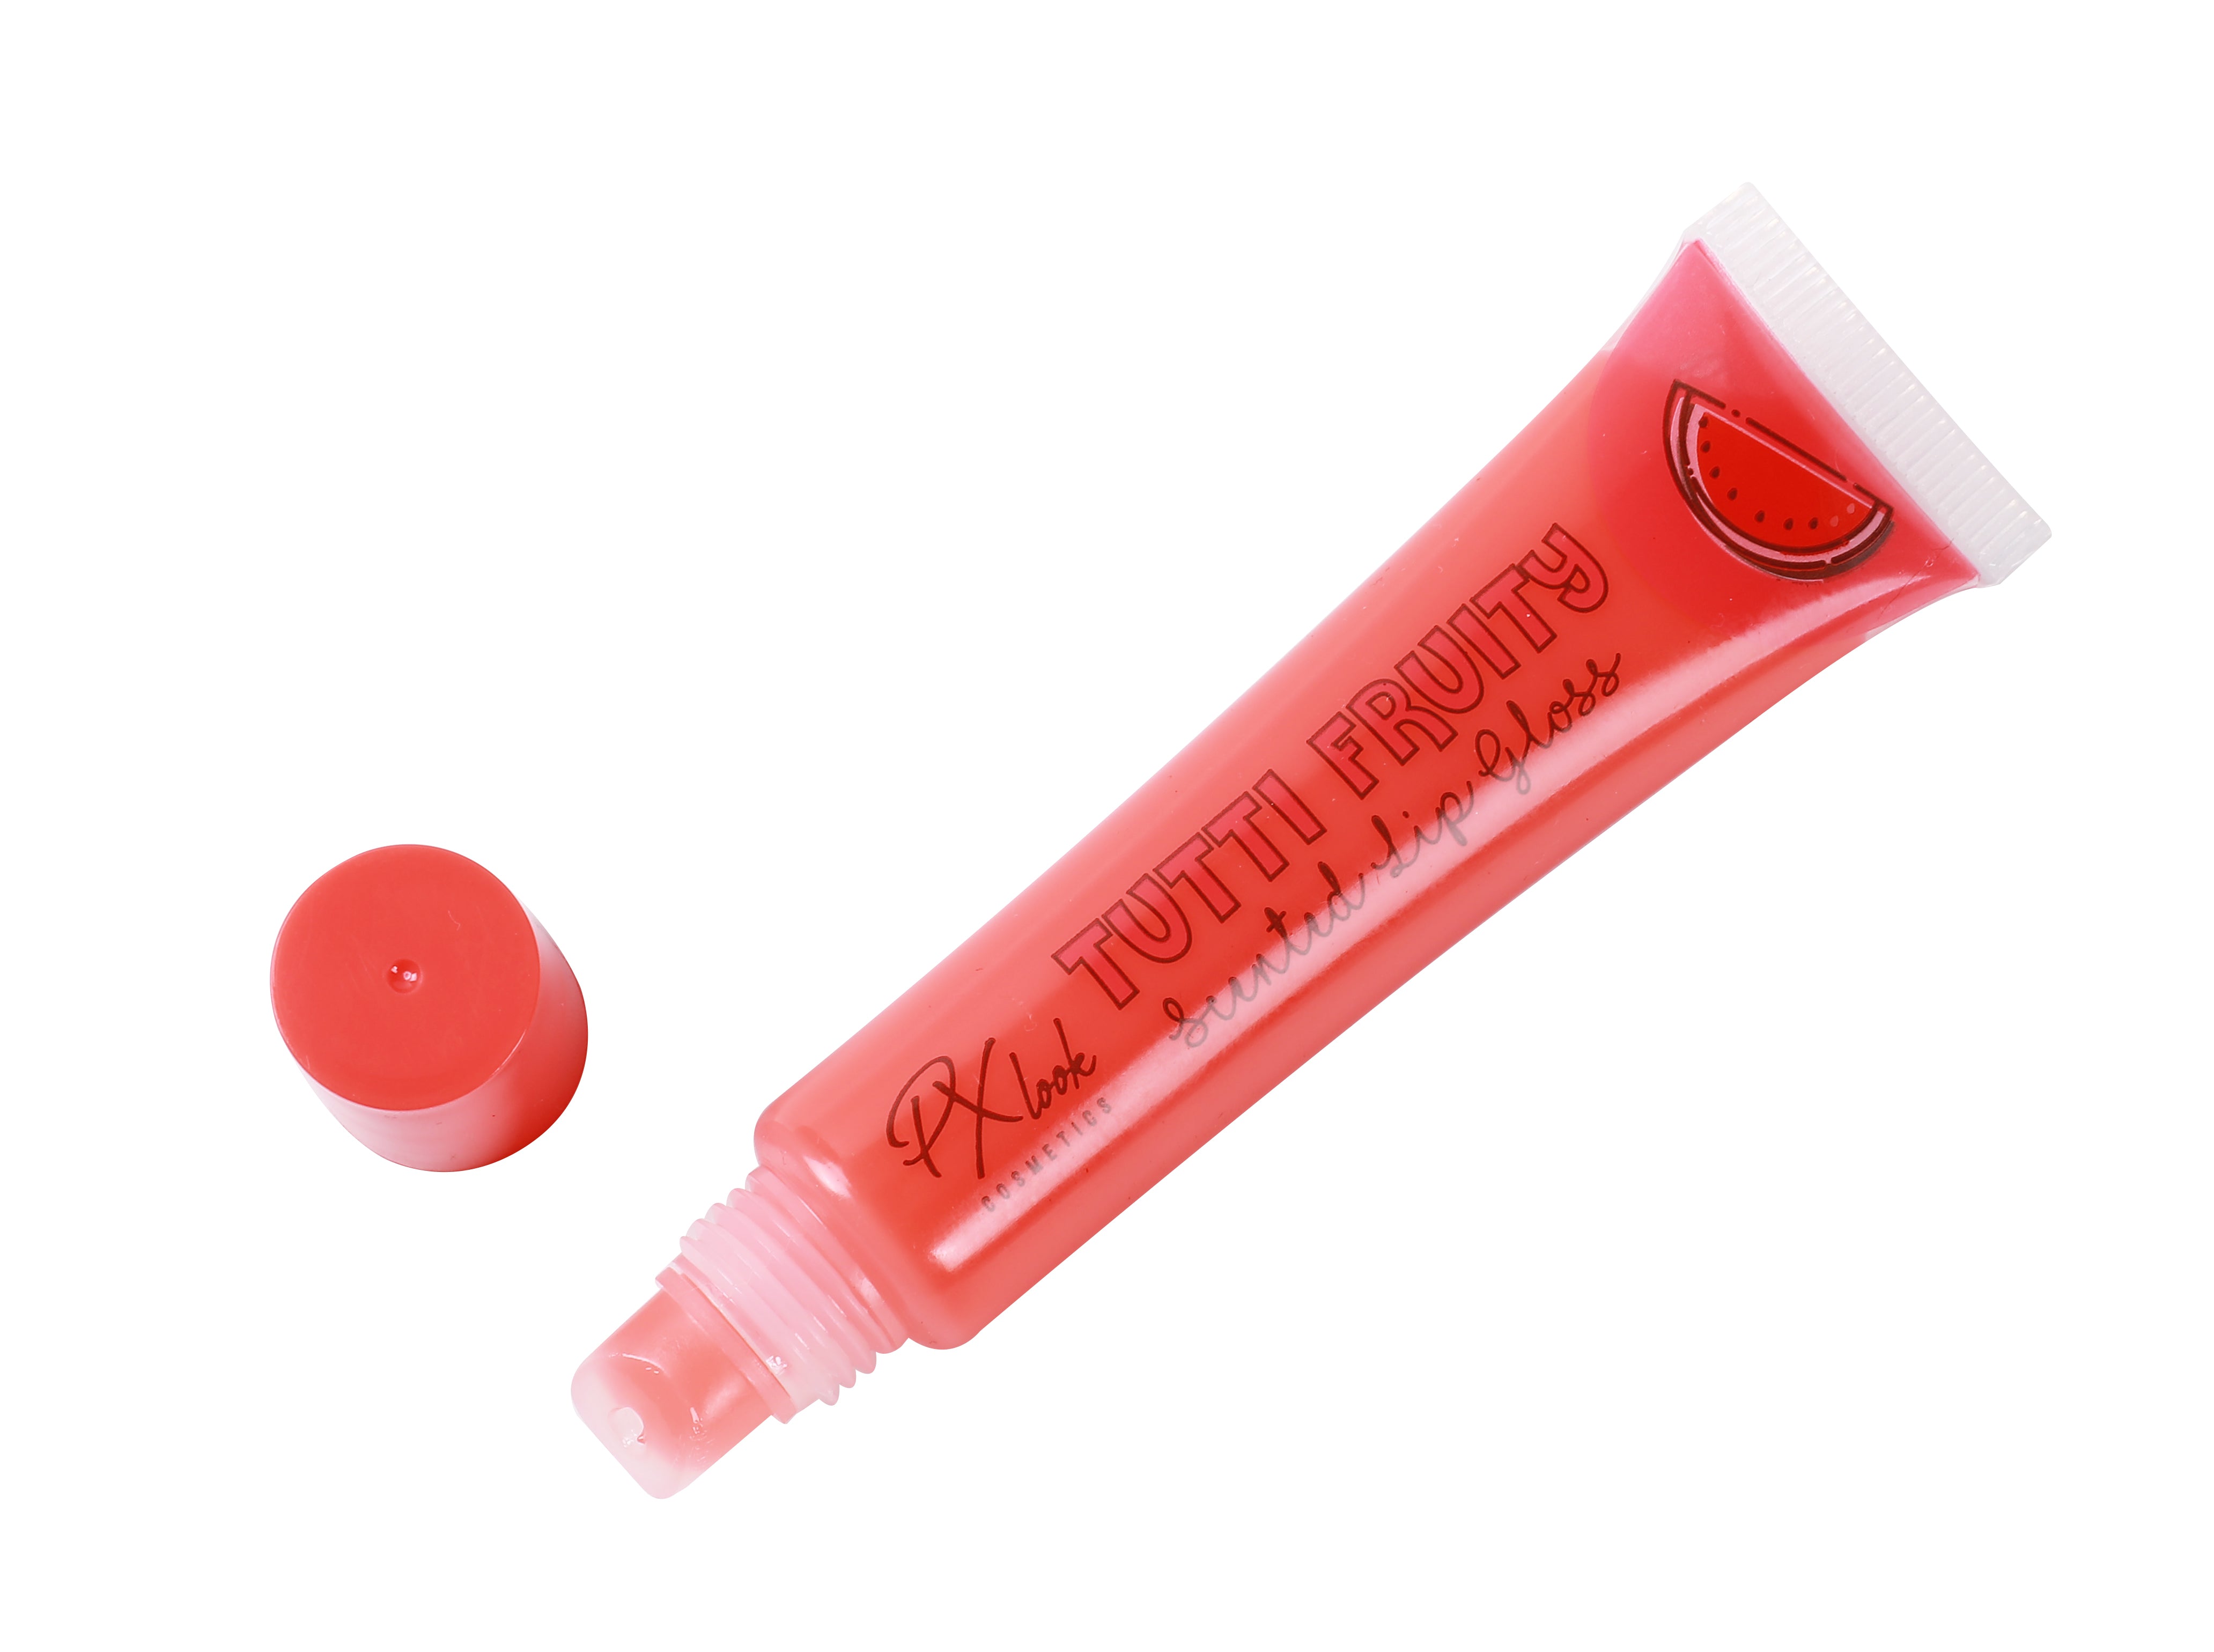 PxLook Tutti Fruity Lip Gloss